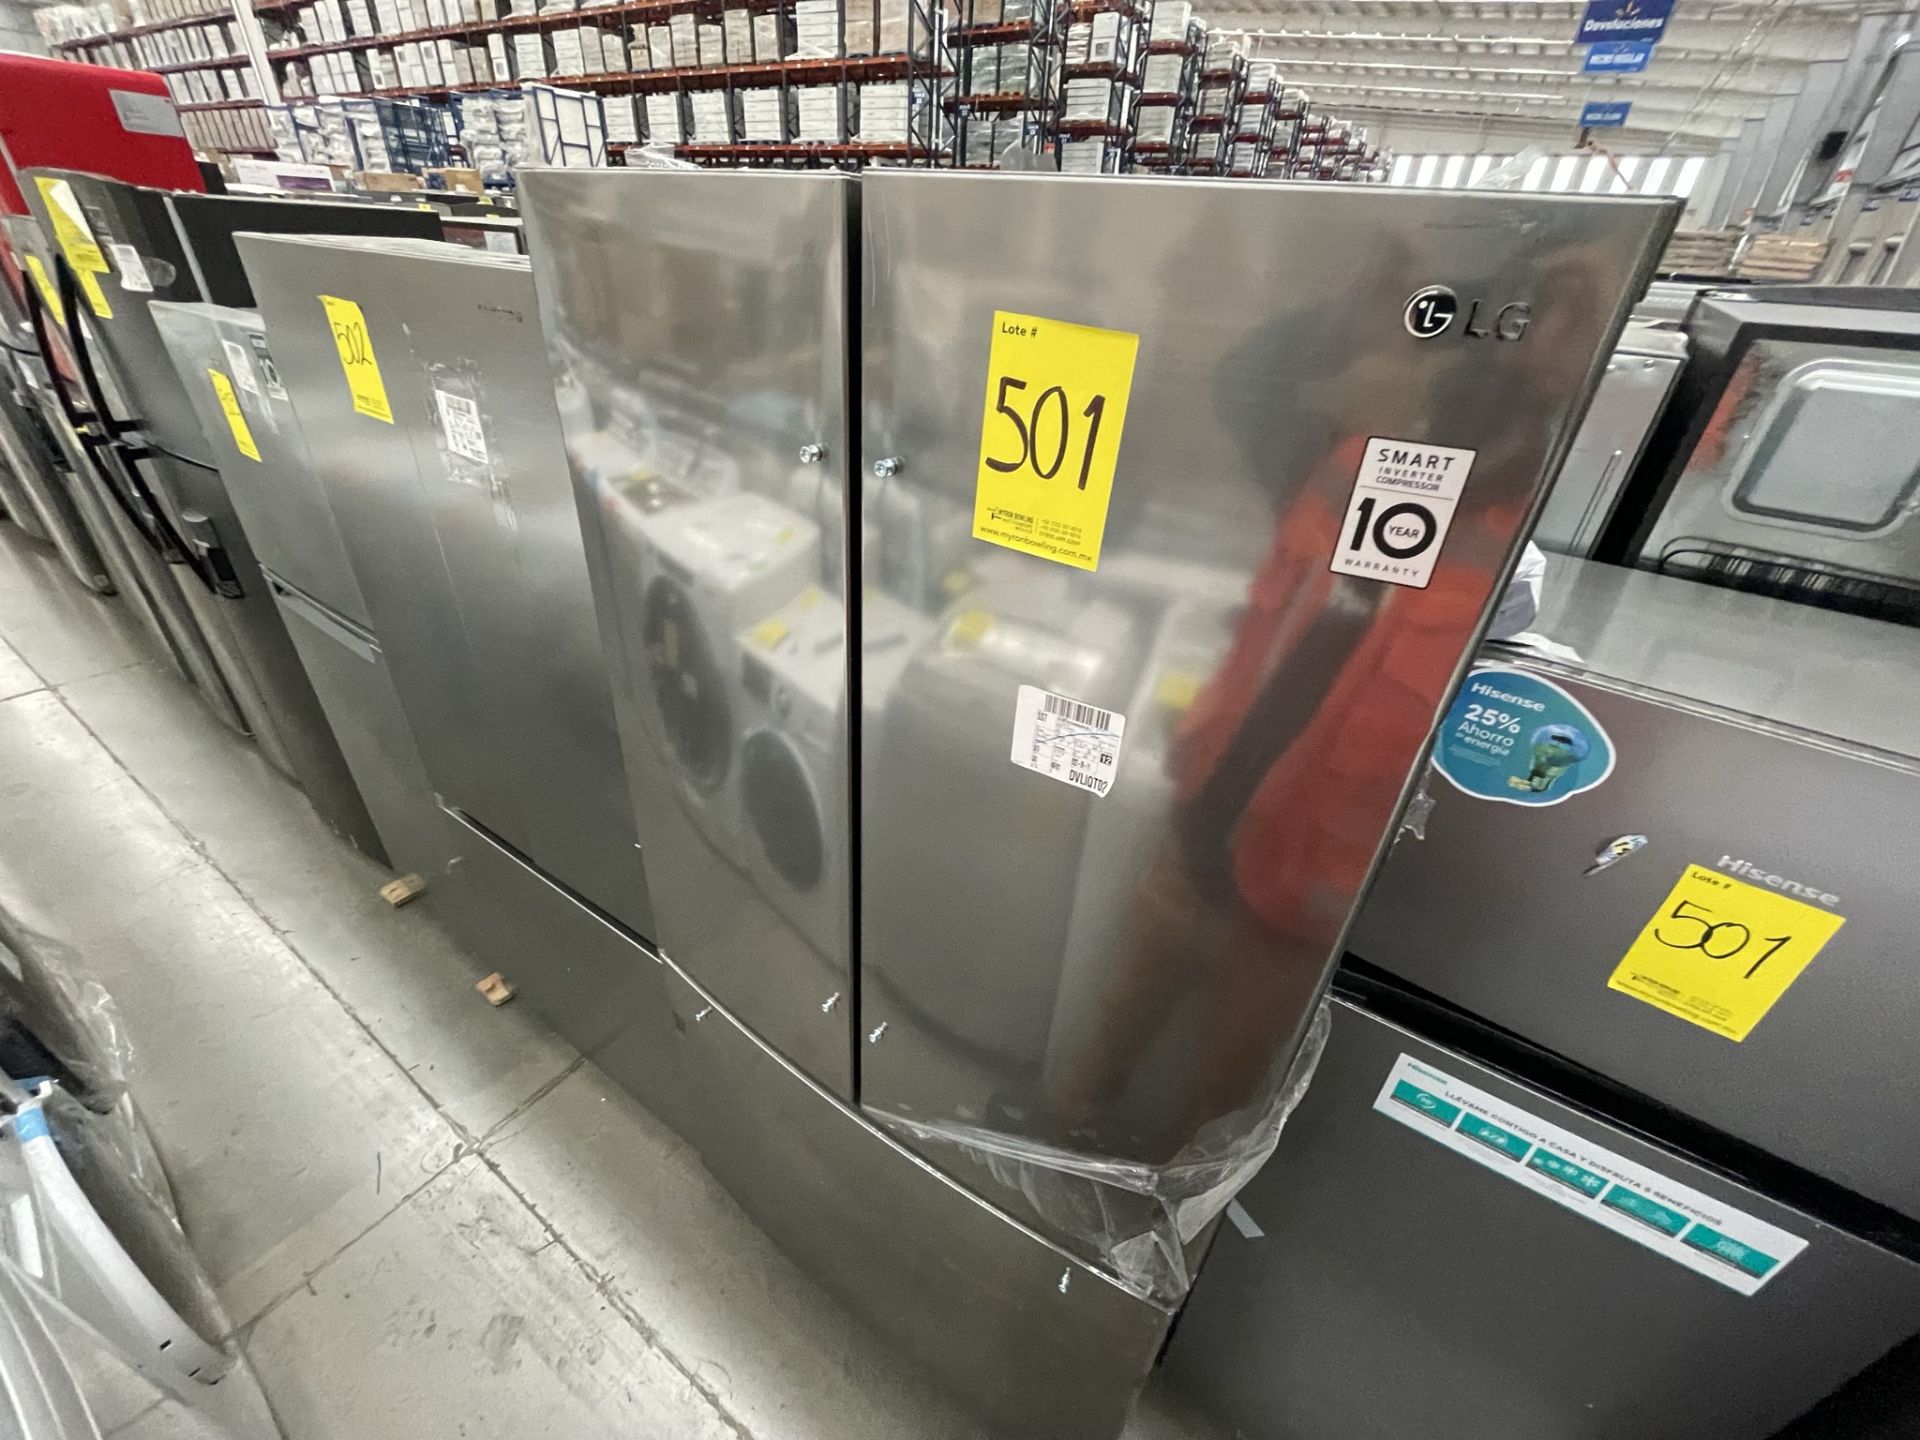 (EQUIPO NUEVO) Lote De 2 Refrigeradores Contiene: 1 Refrigerador Marca LG, Modelo GM29BP, Serie208M - Image 4 of 16